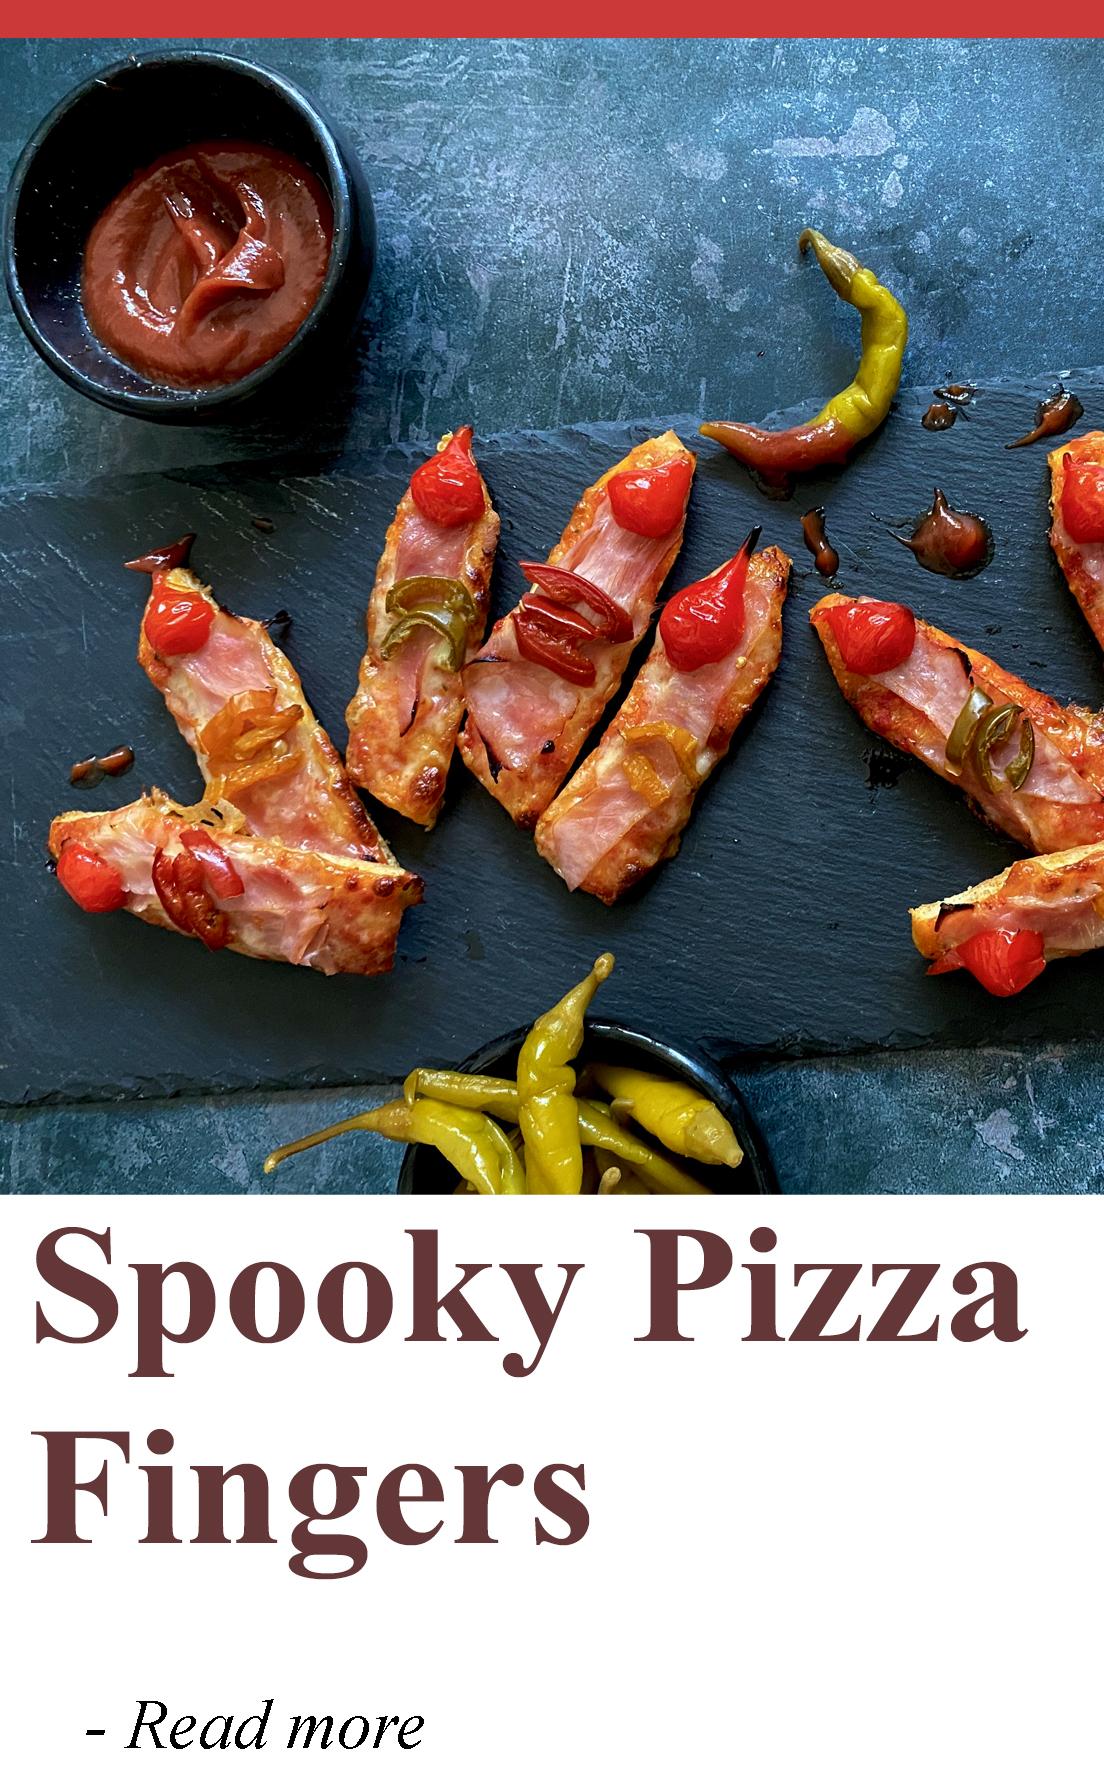 Spooky pizza fingers recipe.jpg